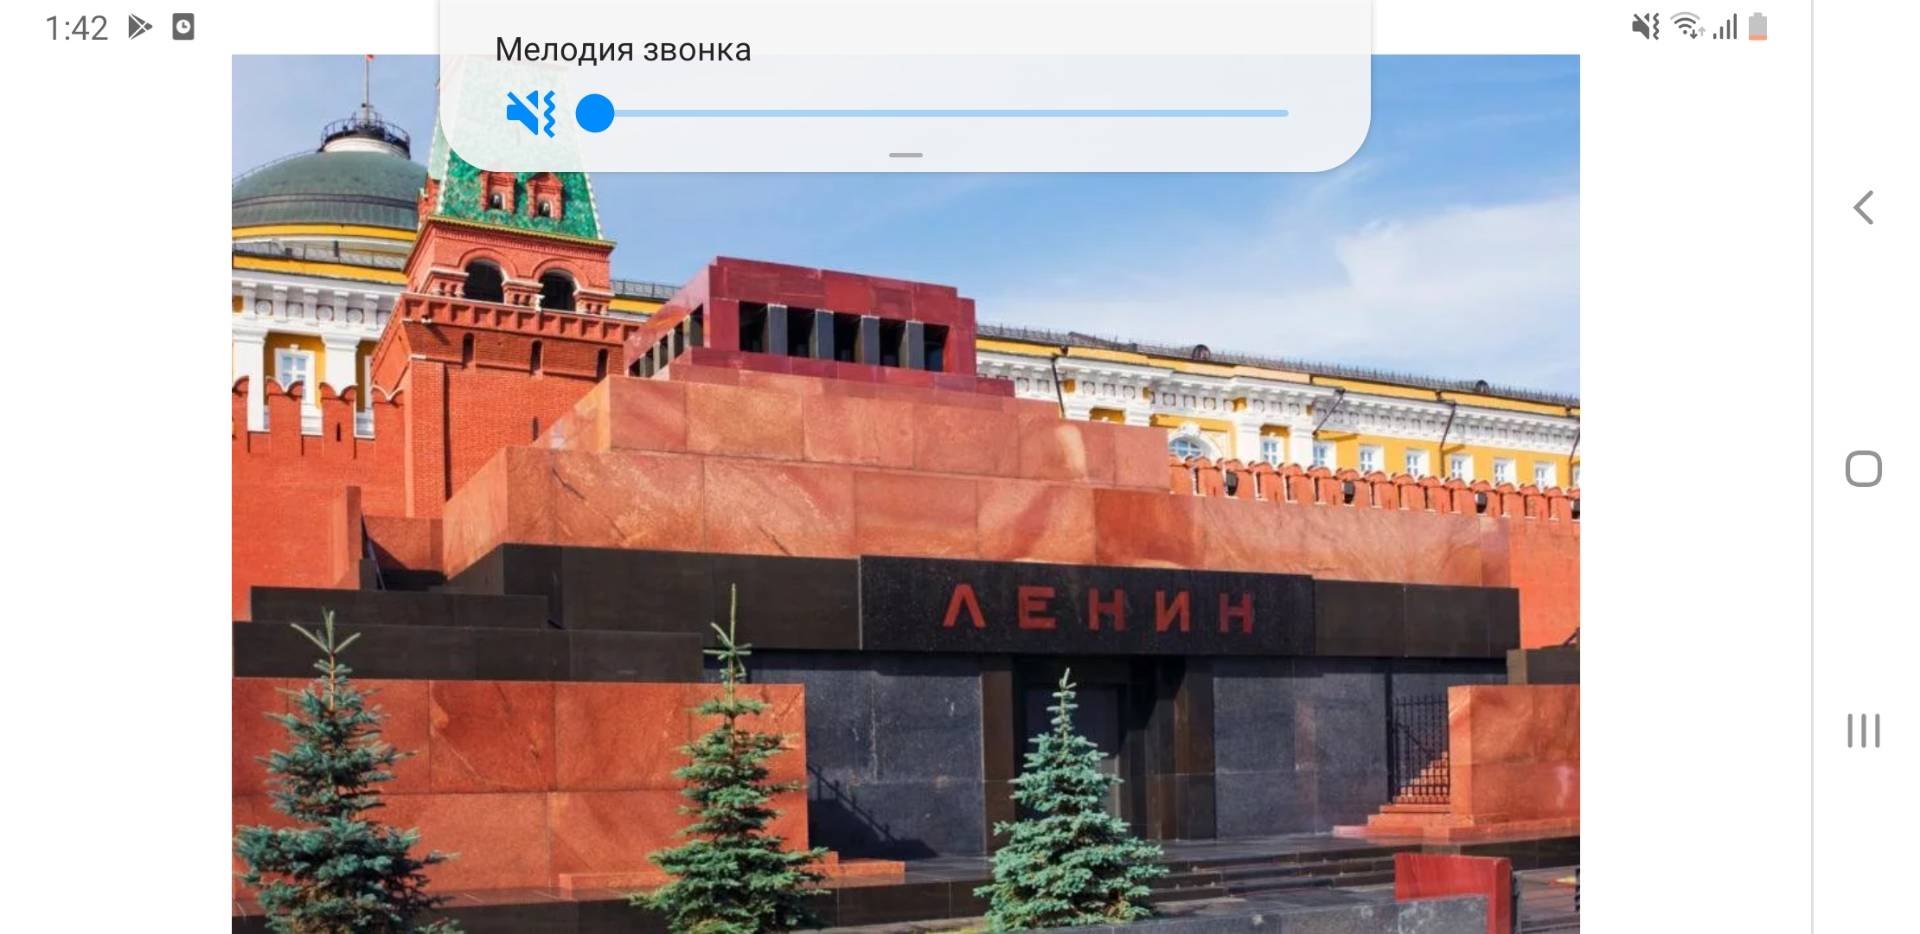 ленин владимир ильич мавзолей кремль фото